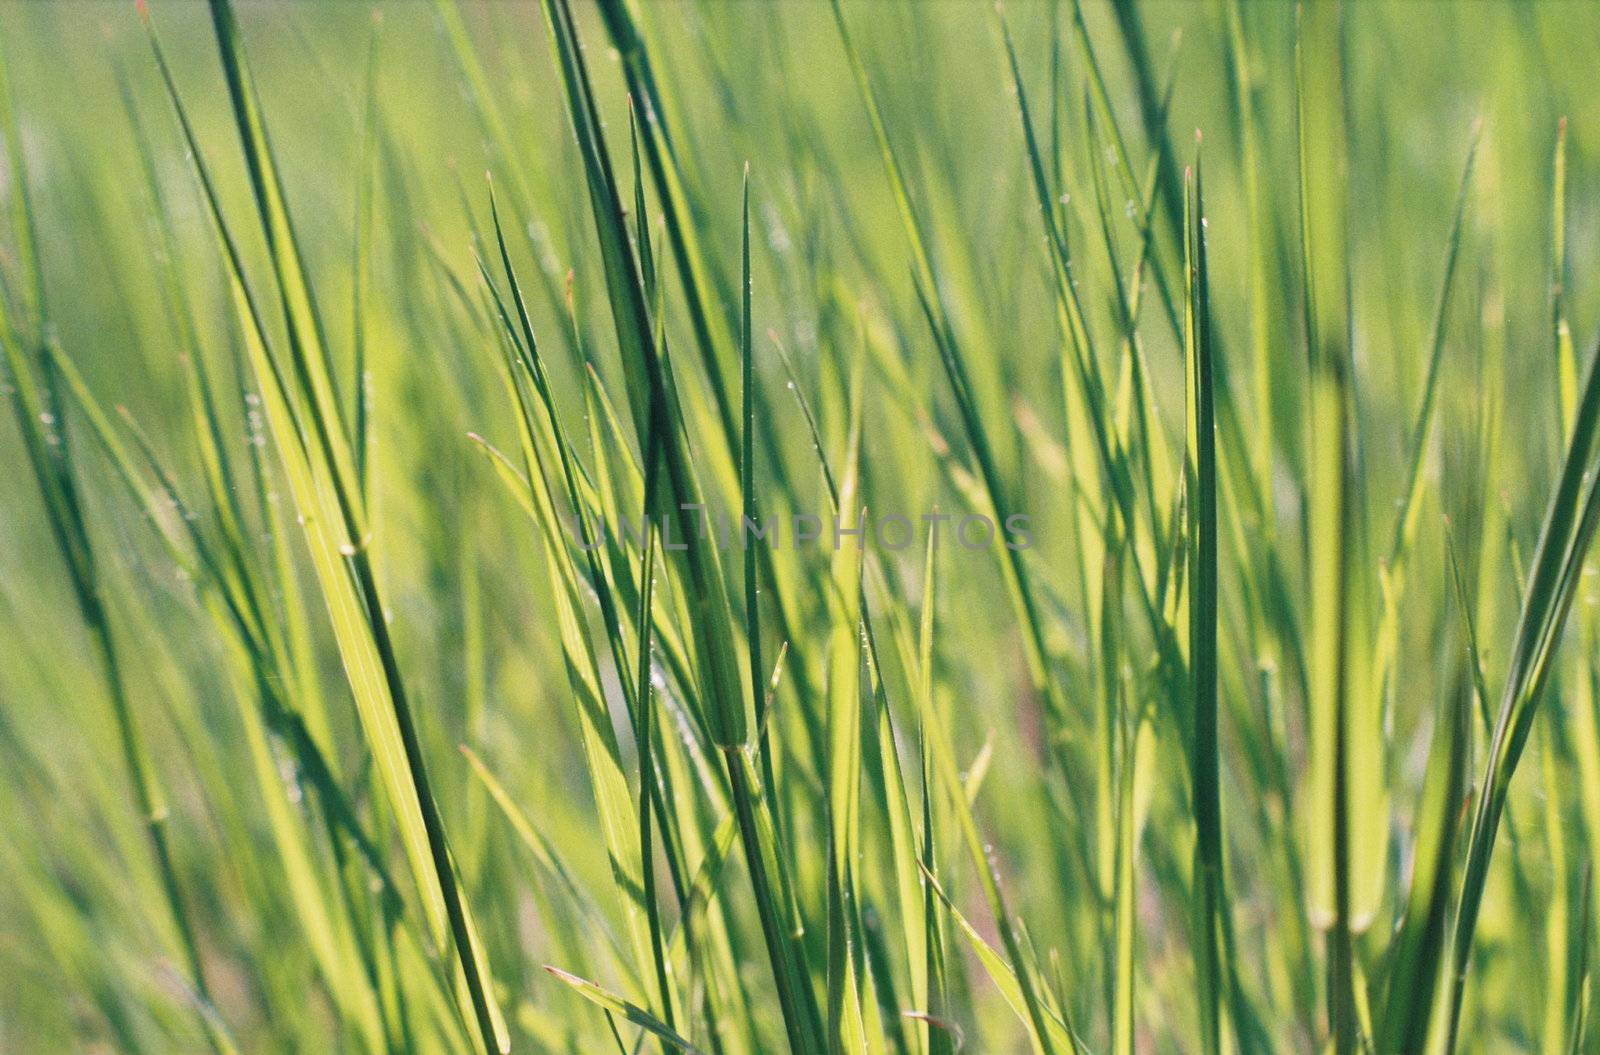 Tall green grass.